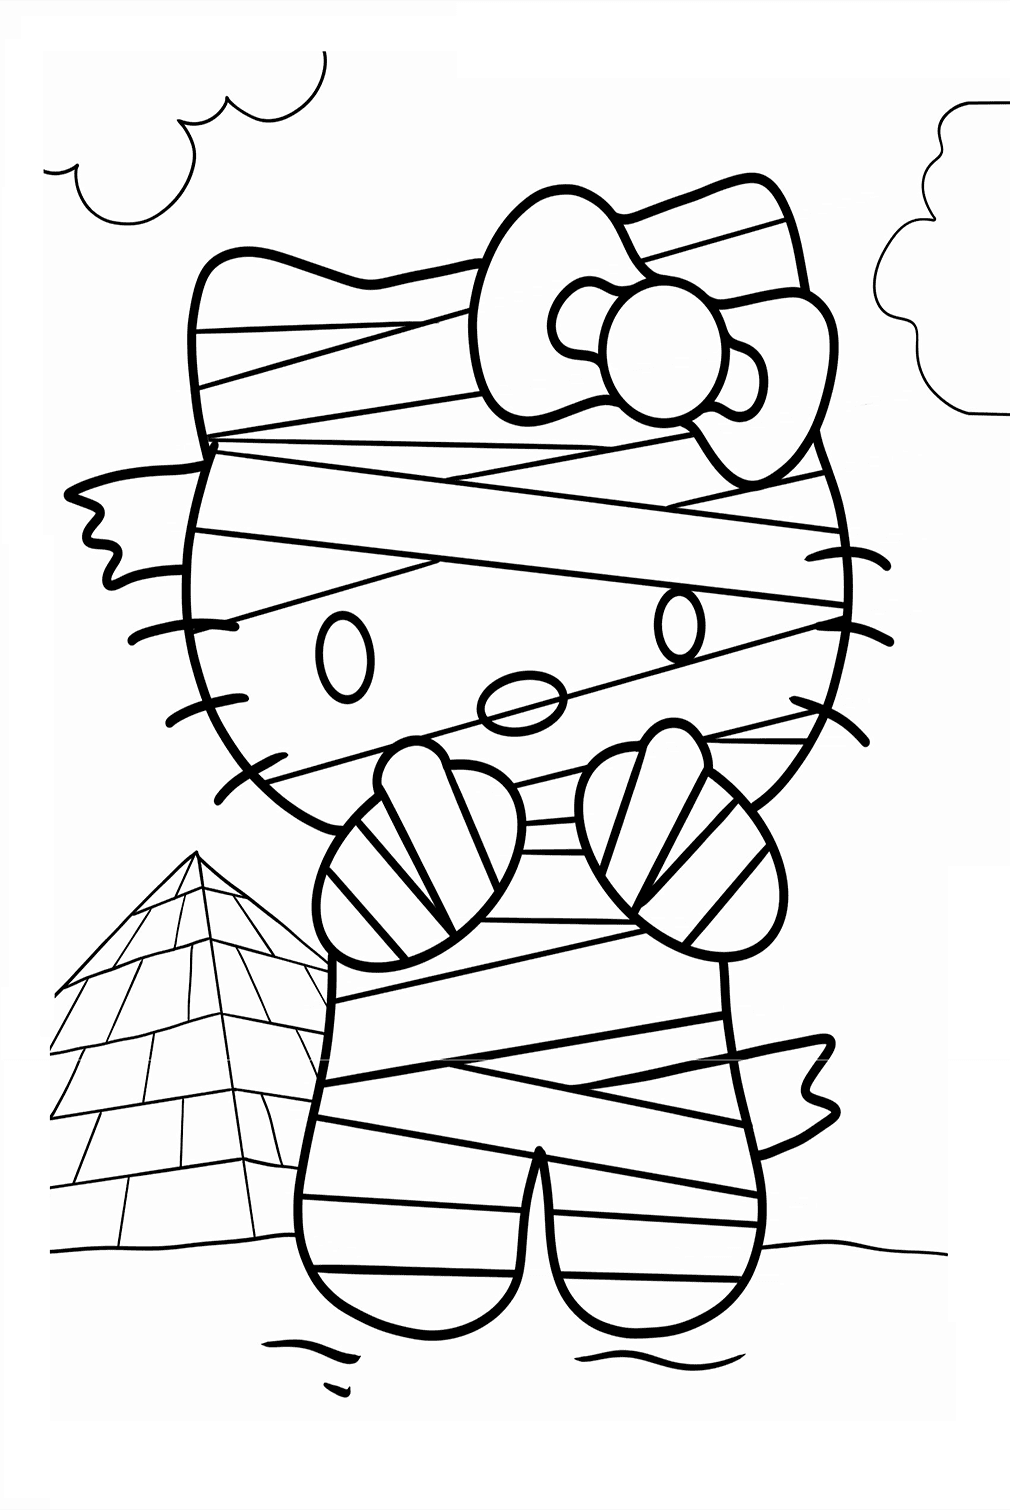 Página para colorear de la momia de Hello Kitty de Halloween Hello Kitty